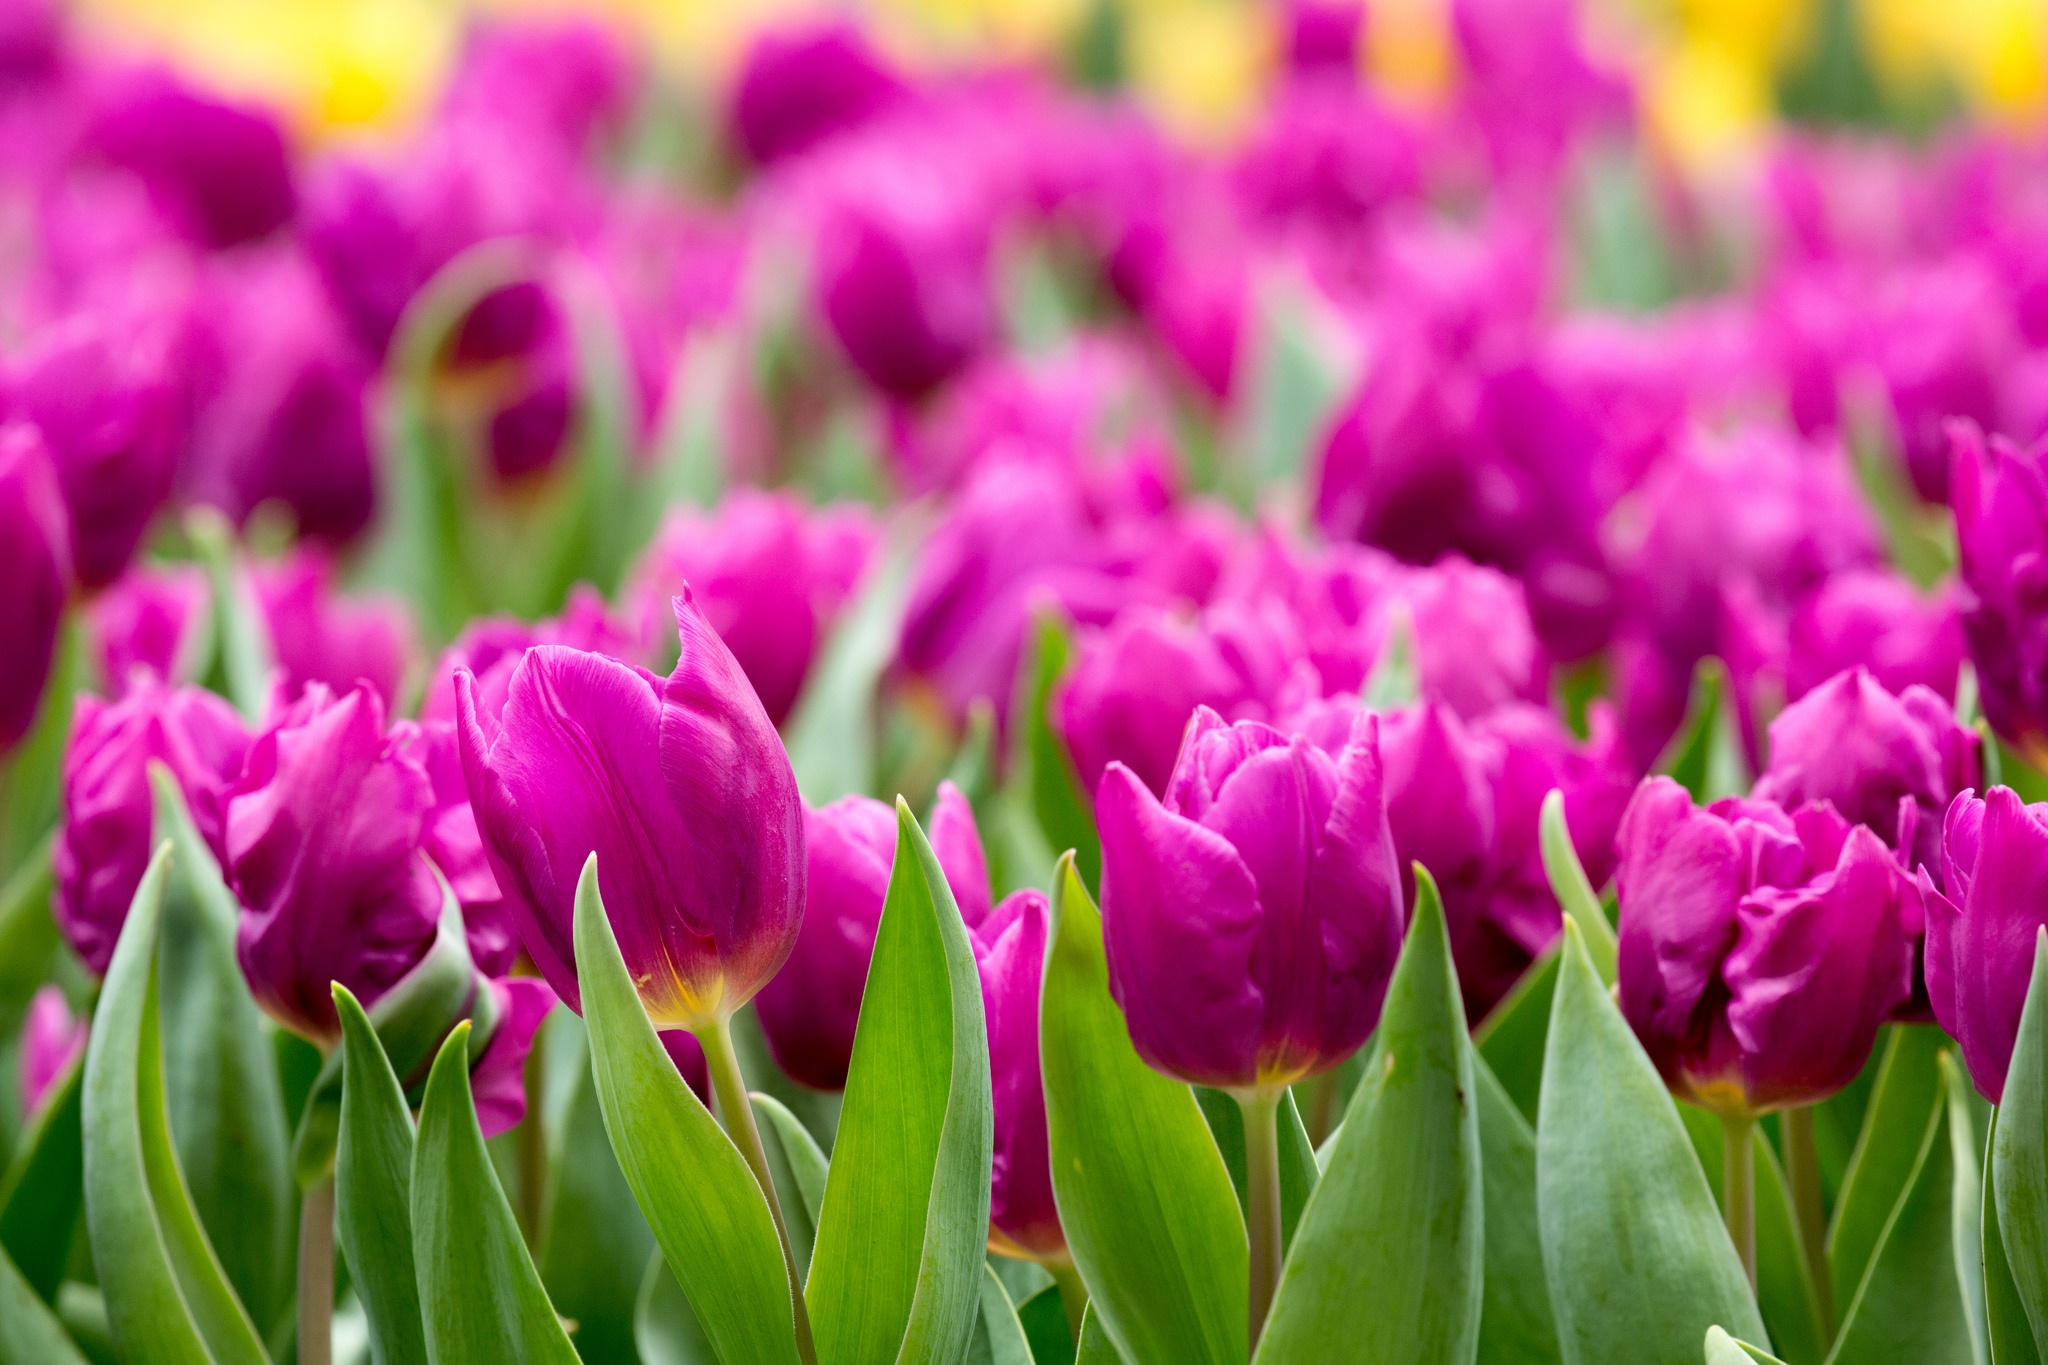 Descarga gratuita de fondo de pantalla para móvil de Naturaleza, Flores, Flor, Tulipán, Flor Purpura, Tierra/naturaleza.